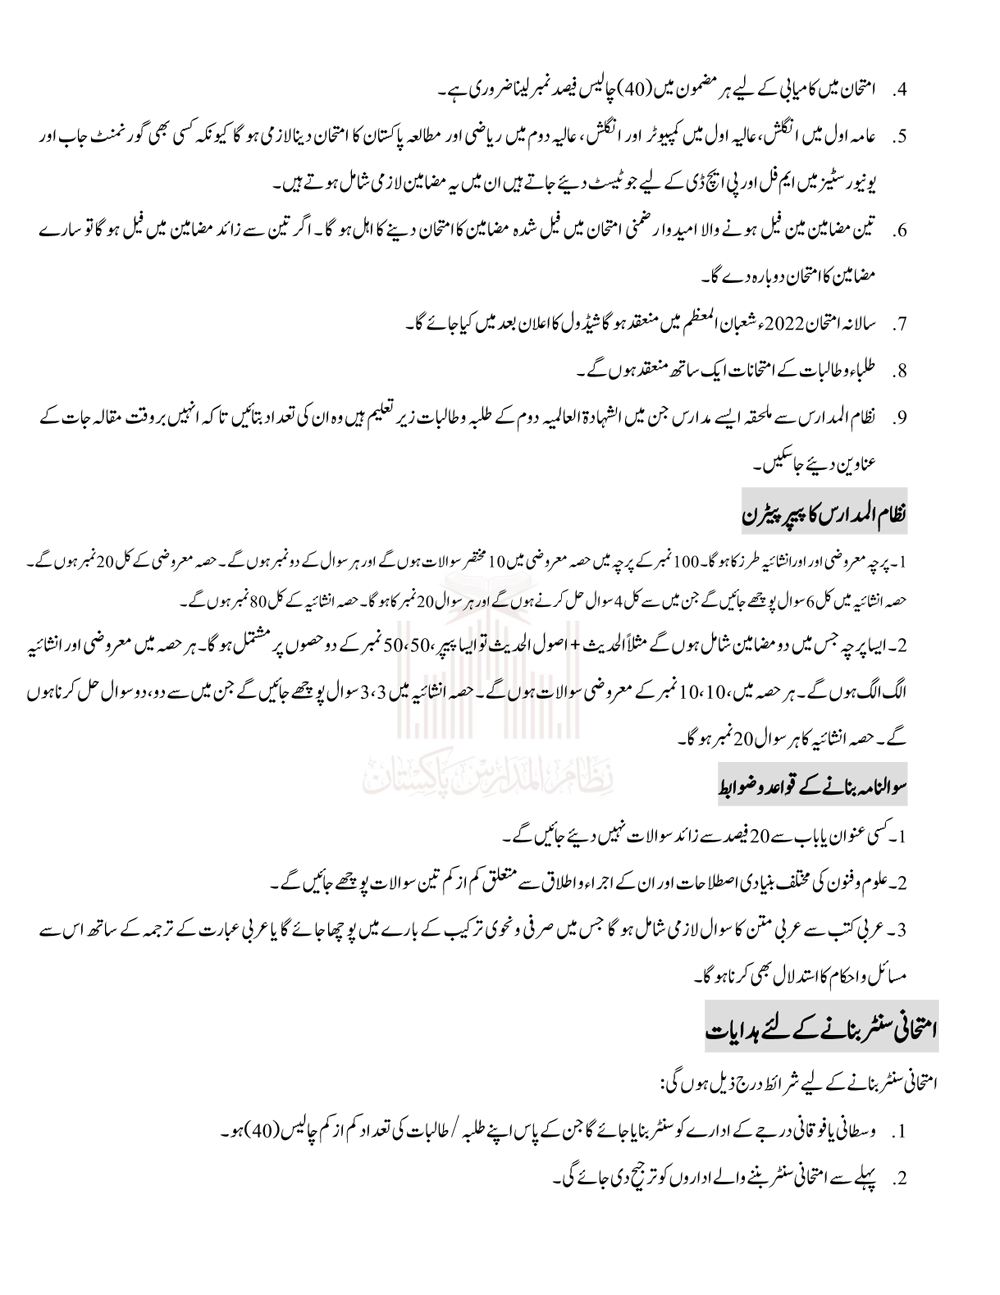 Examination Policy 2022 Nizam ul Madaris Pakistan